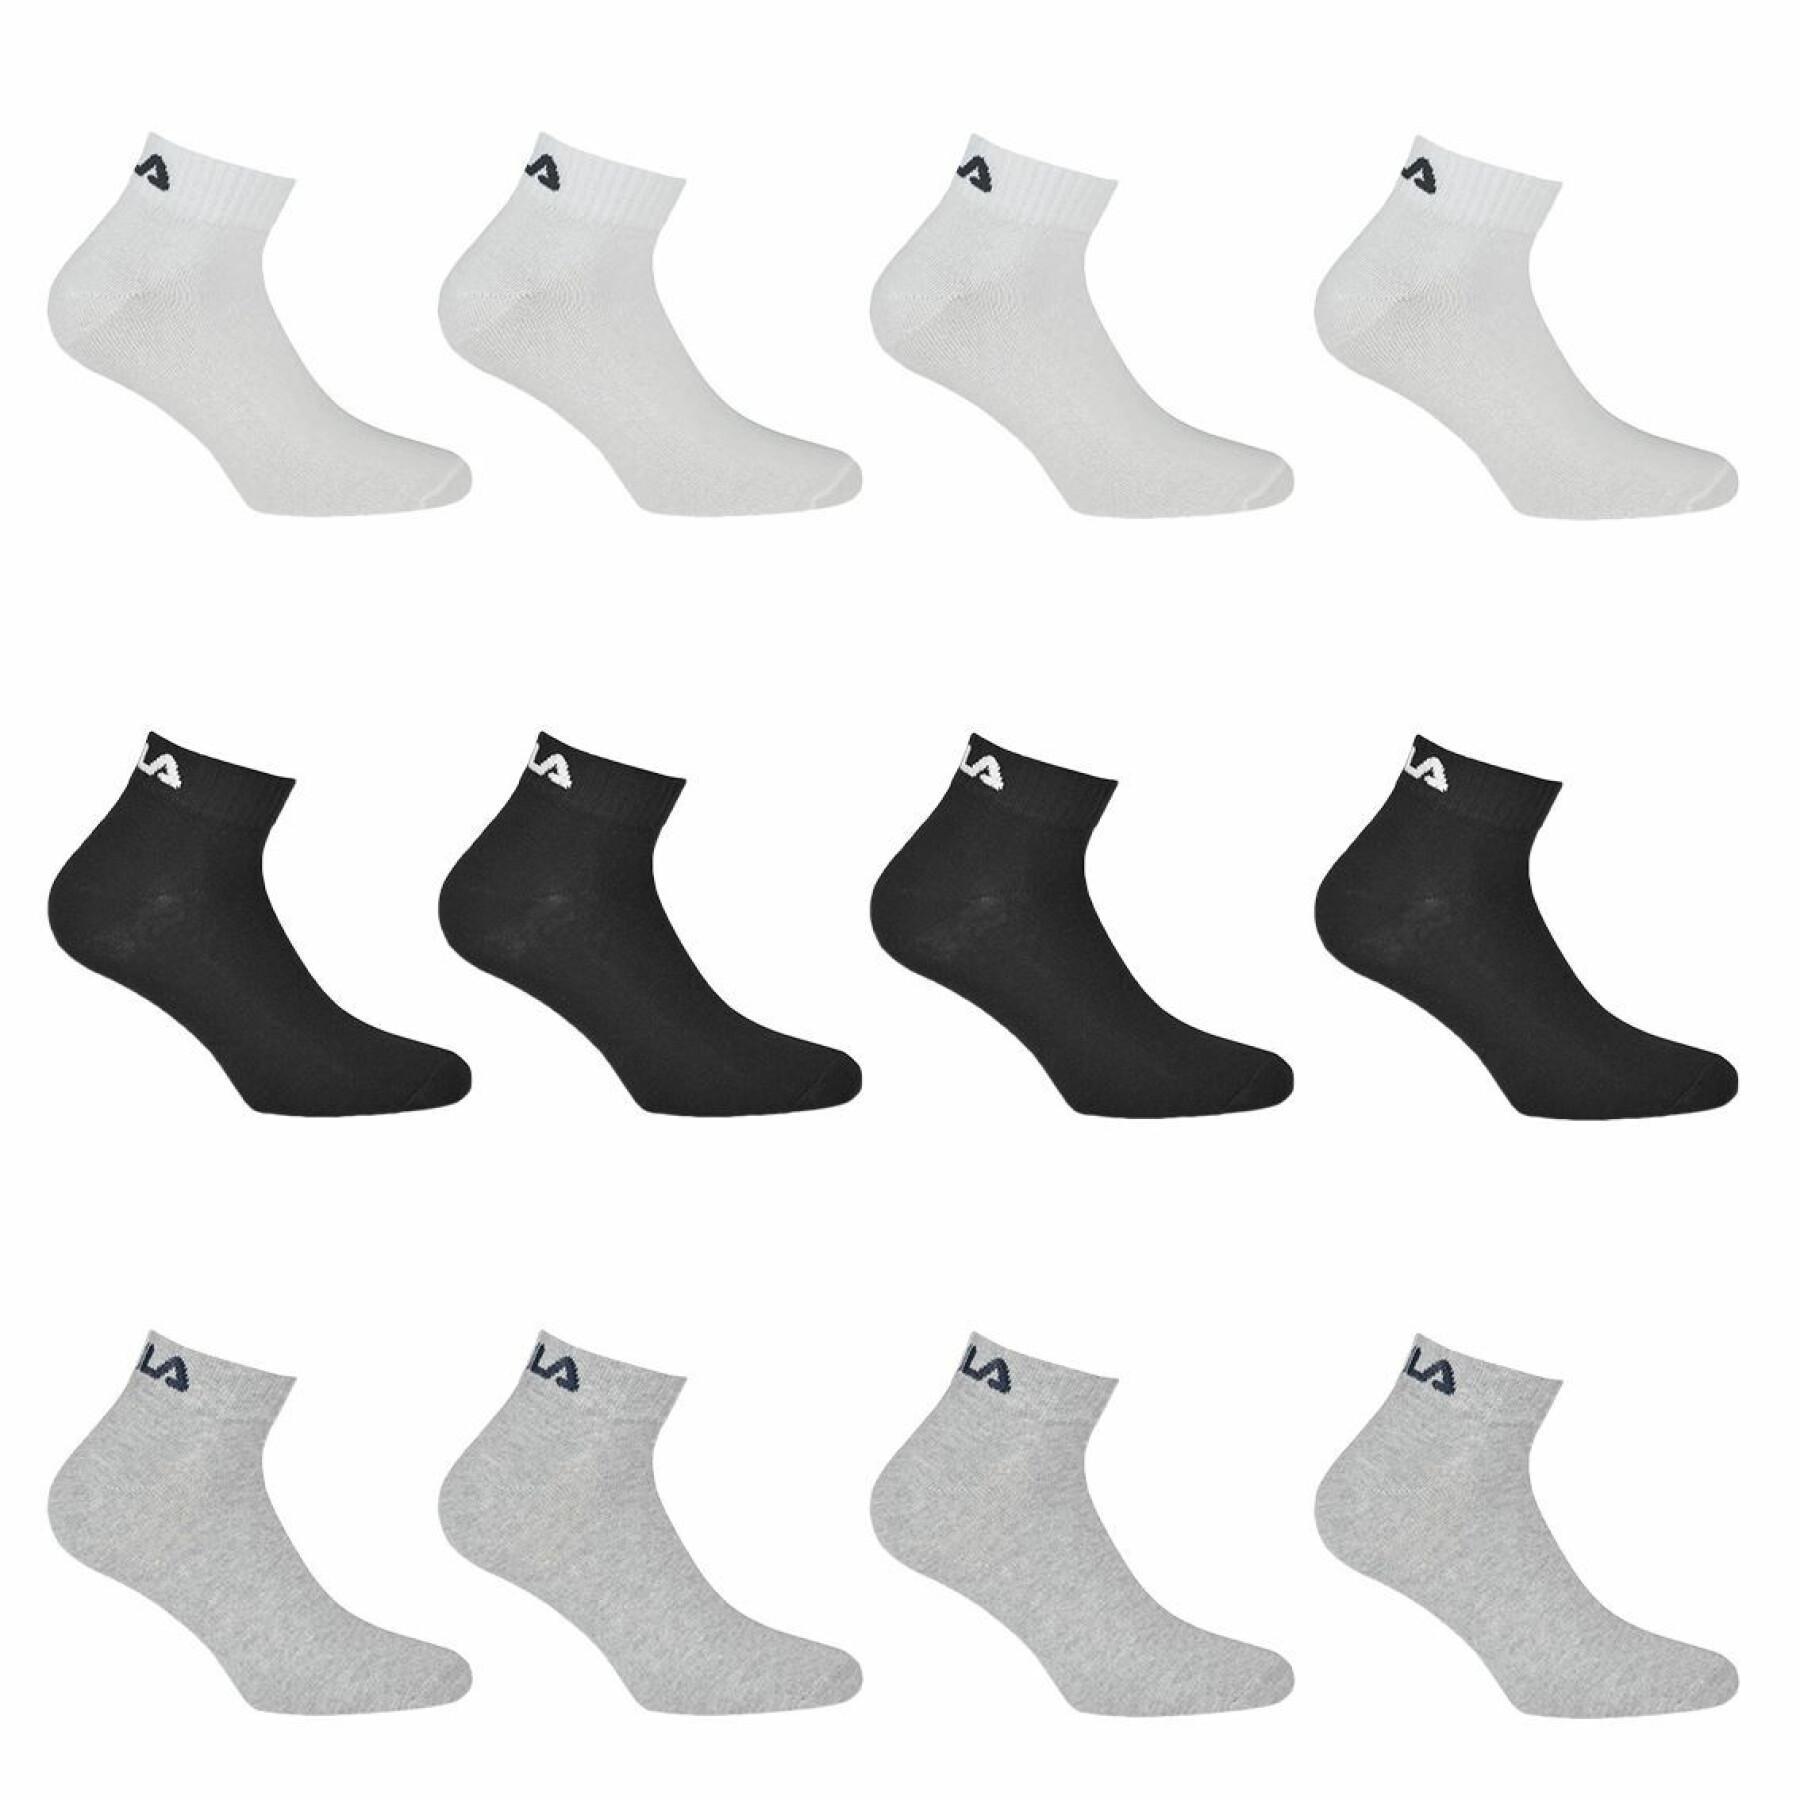 Paquete de 12 pares de calcetines de cuarto modelo 9300 Fila